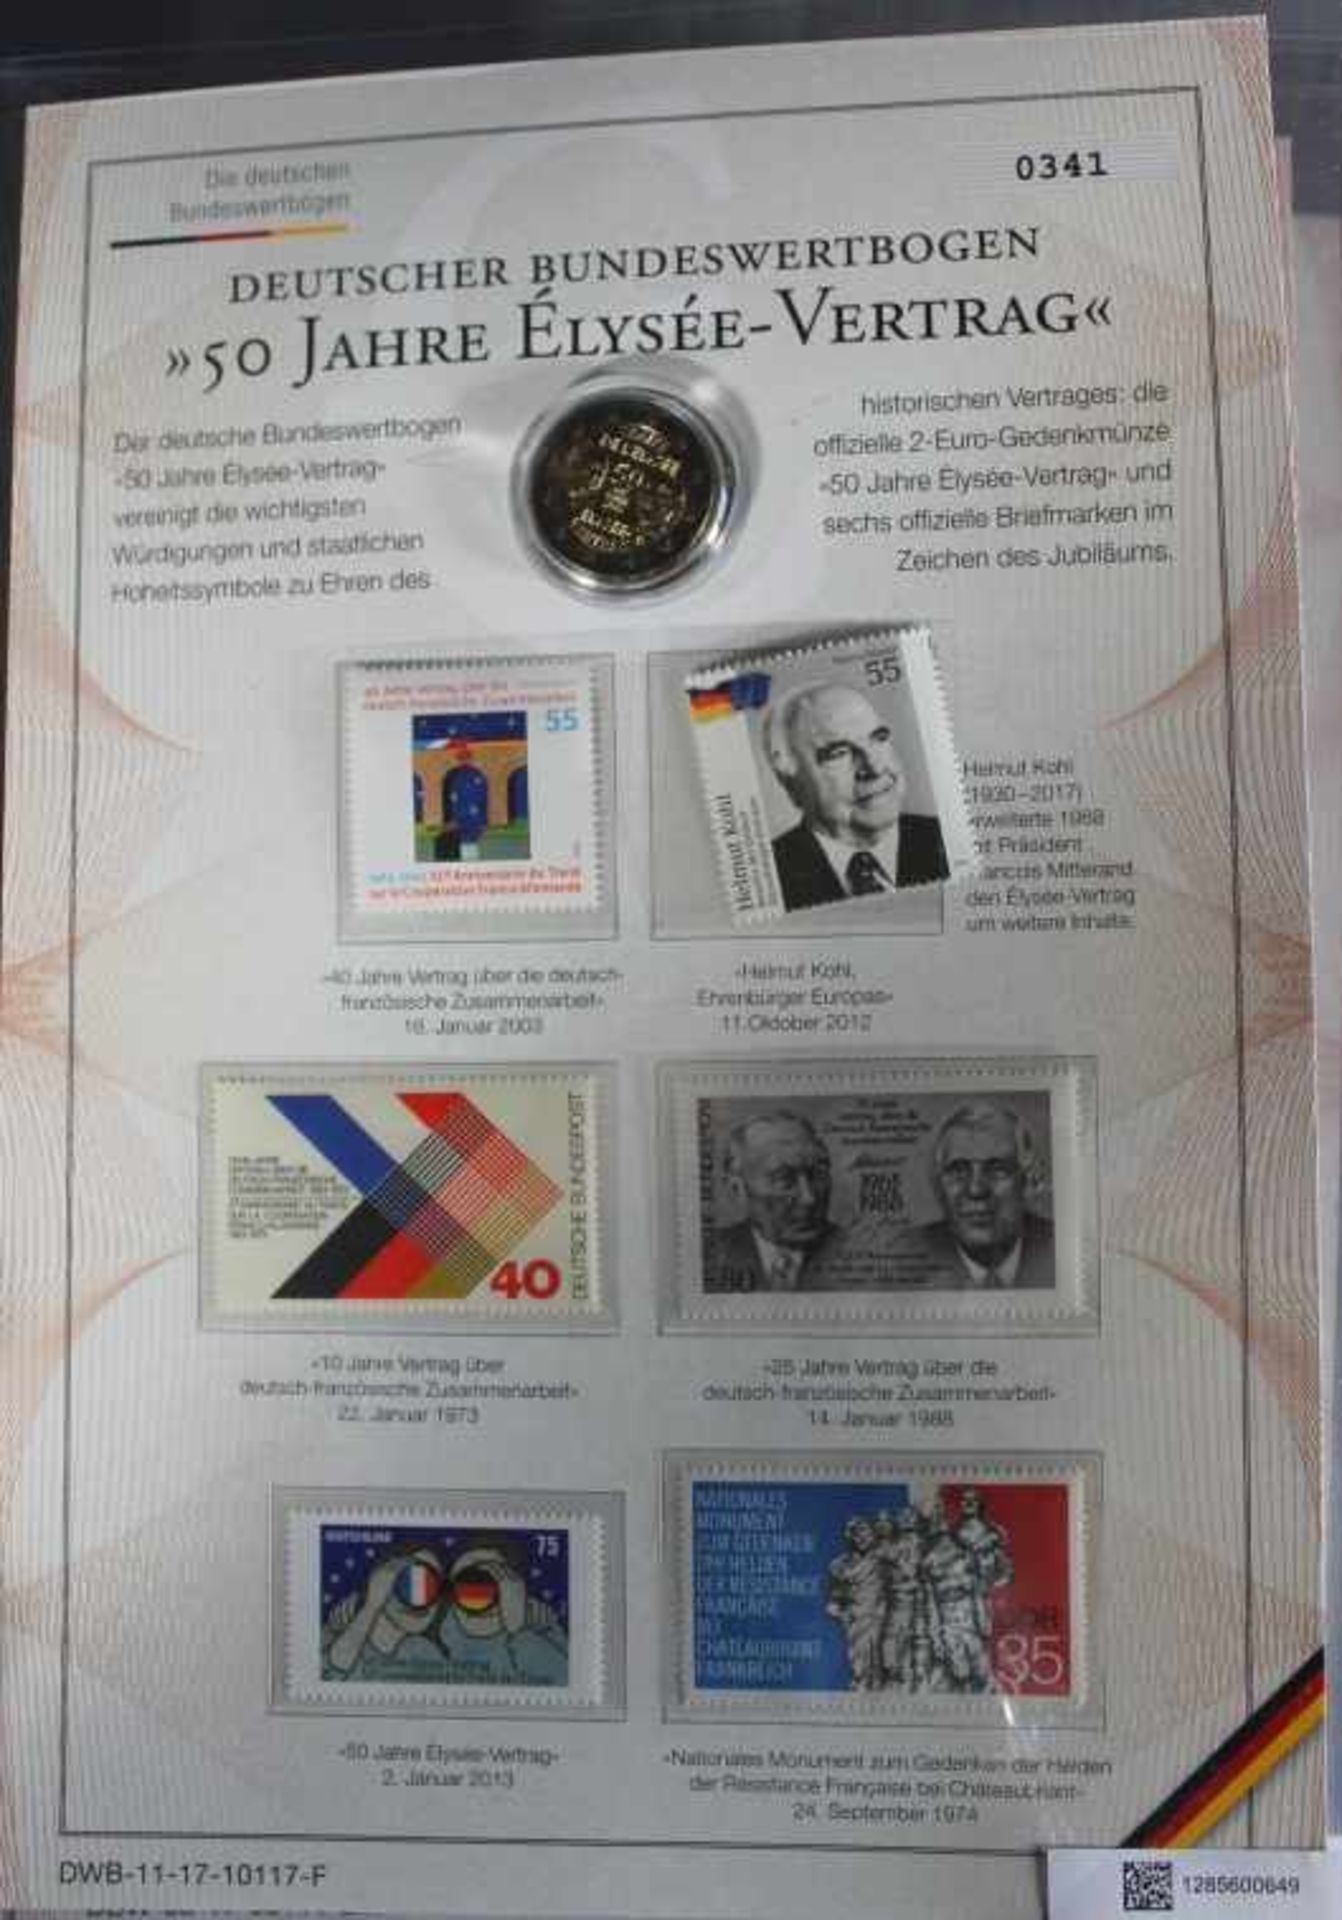 1 Ordner mit 16 "Deutscher Bundeswertbogen" mit jeweils ein 2-Eurostück und Briefmarken, Schleswig